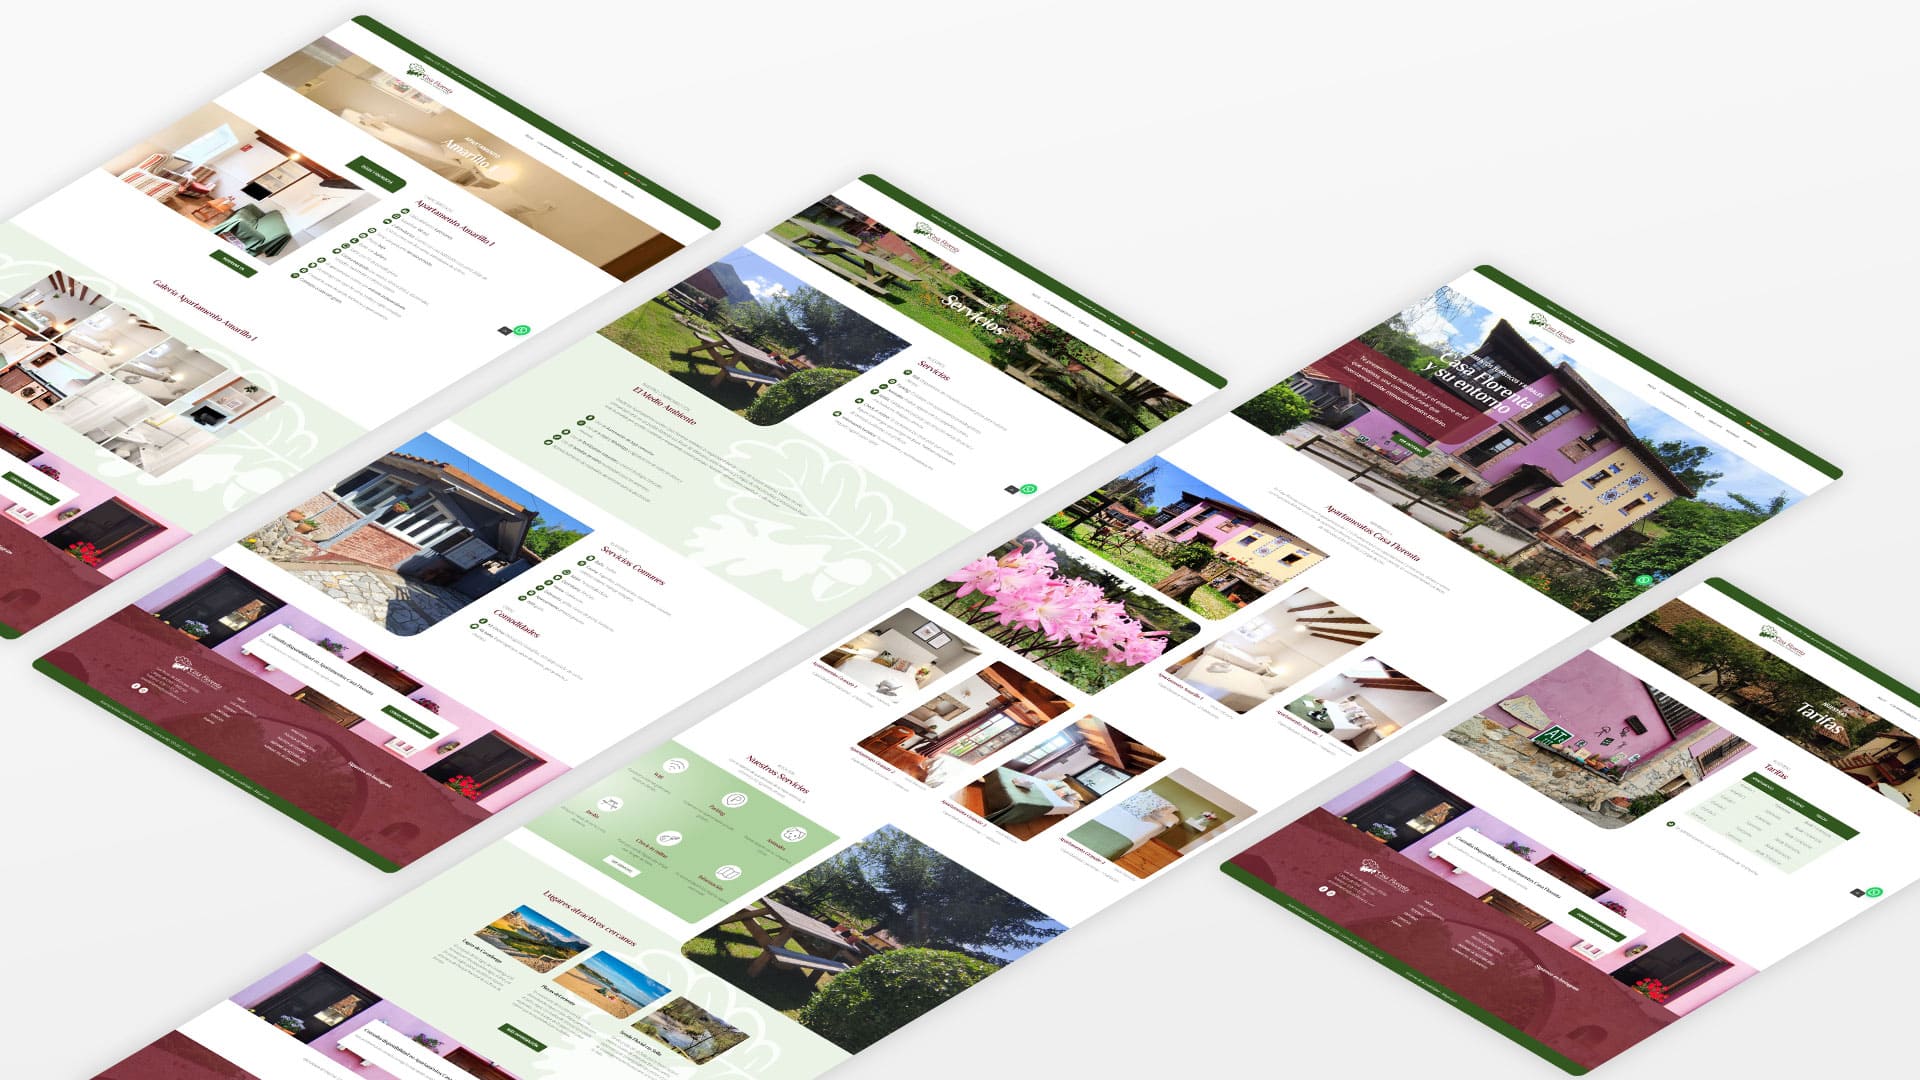 Diseño de web para Casa Florenta, alojamientos rurales junto al Sella. Diseño de pantallas en versión sobremesa